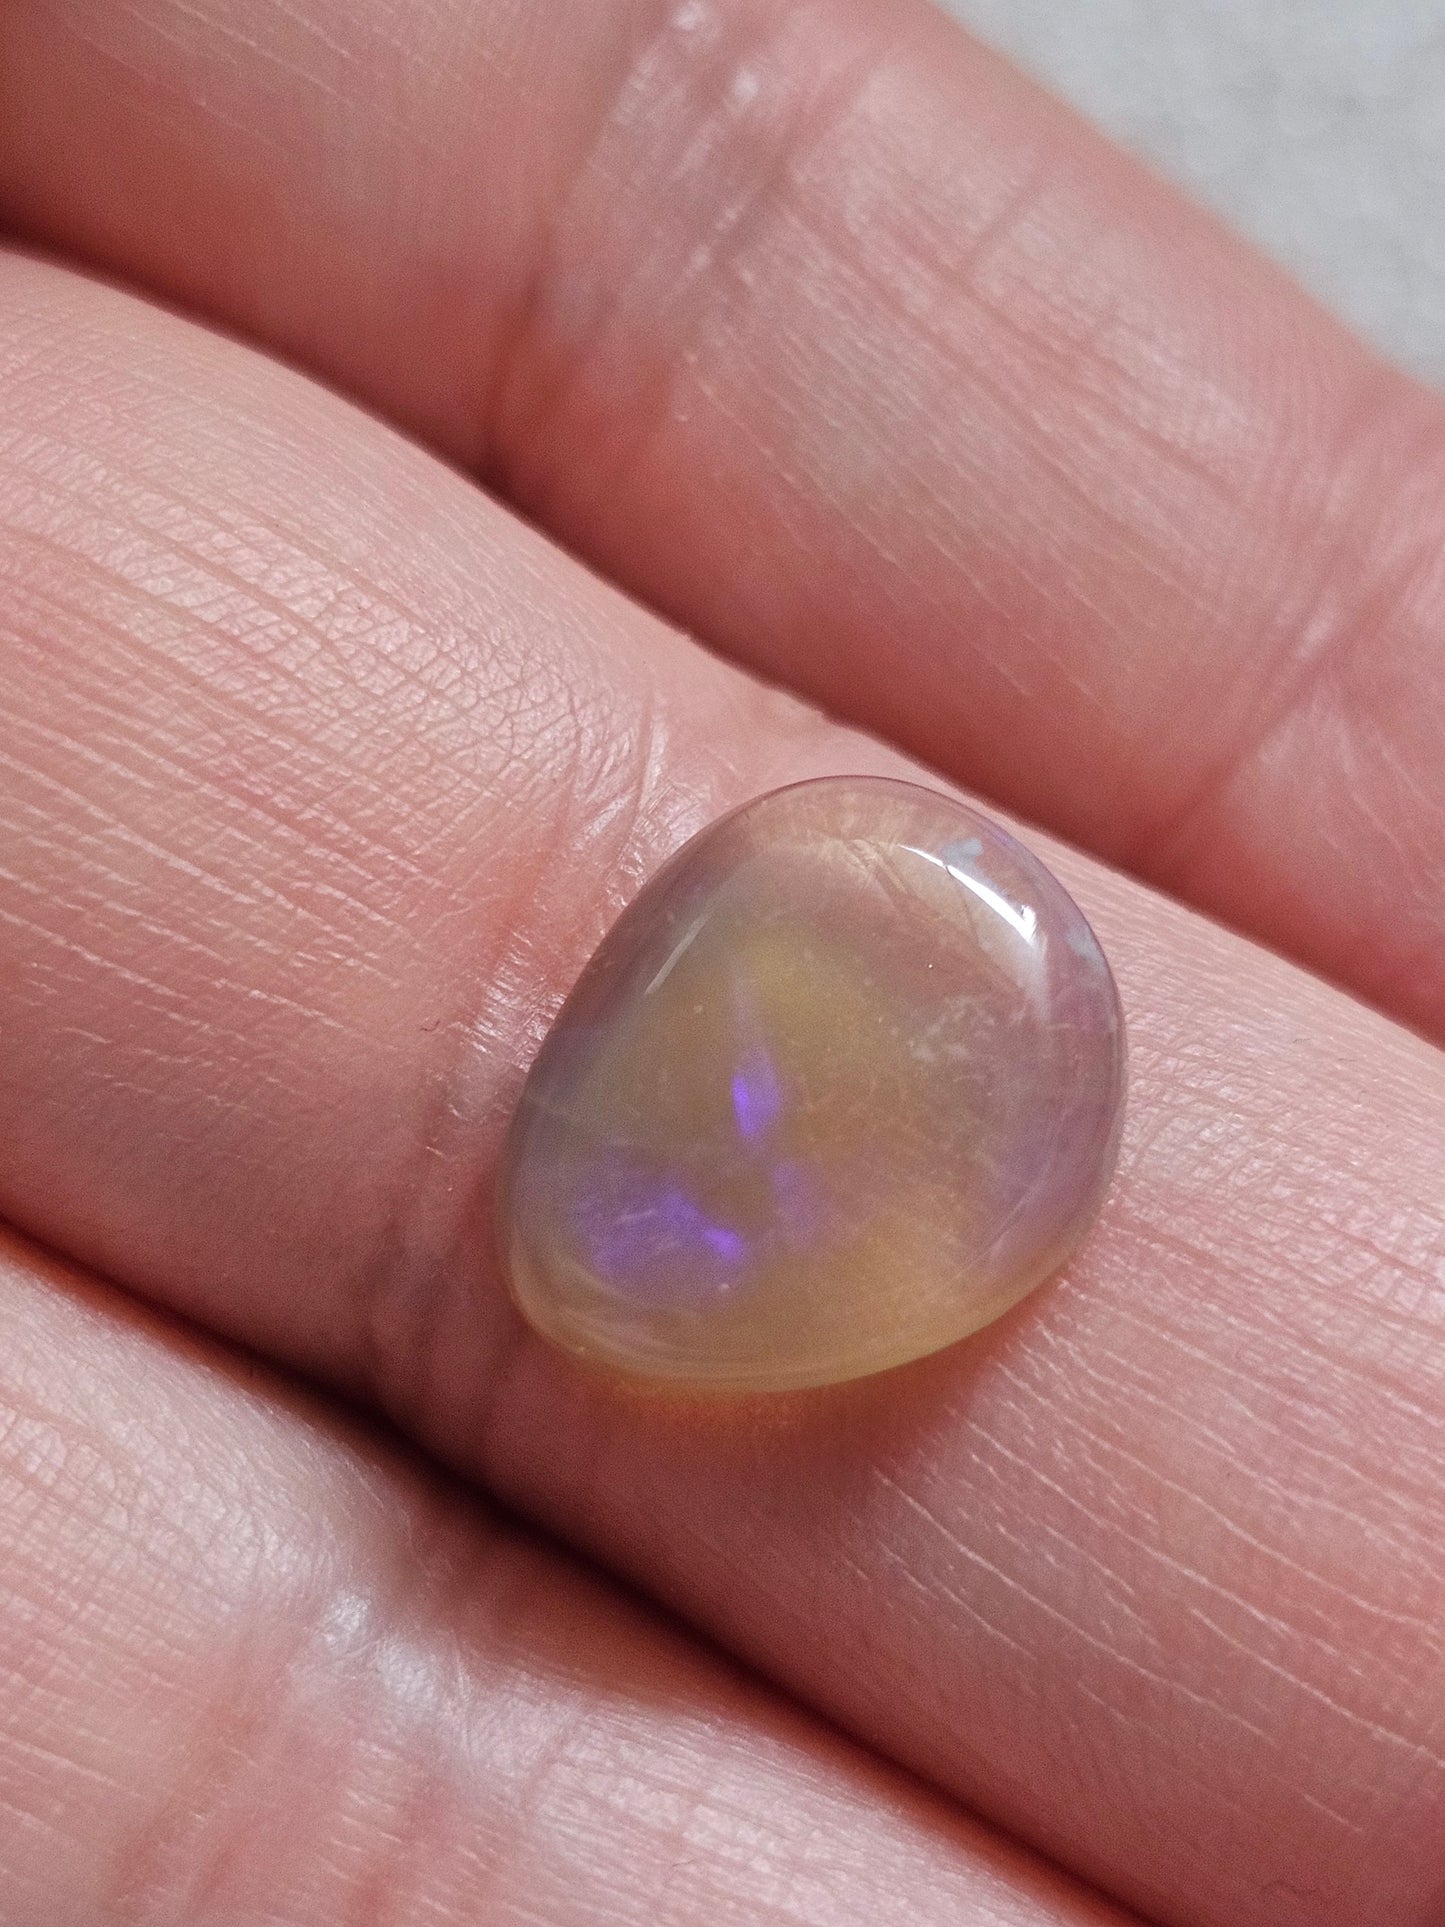 Australian opal NSW / Crystal opal / Lightning ridge Opal